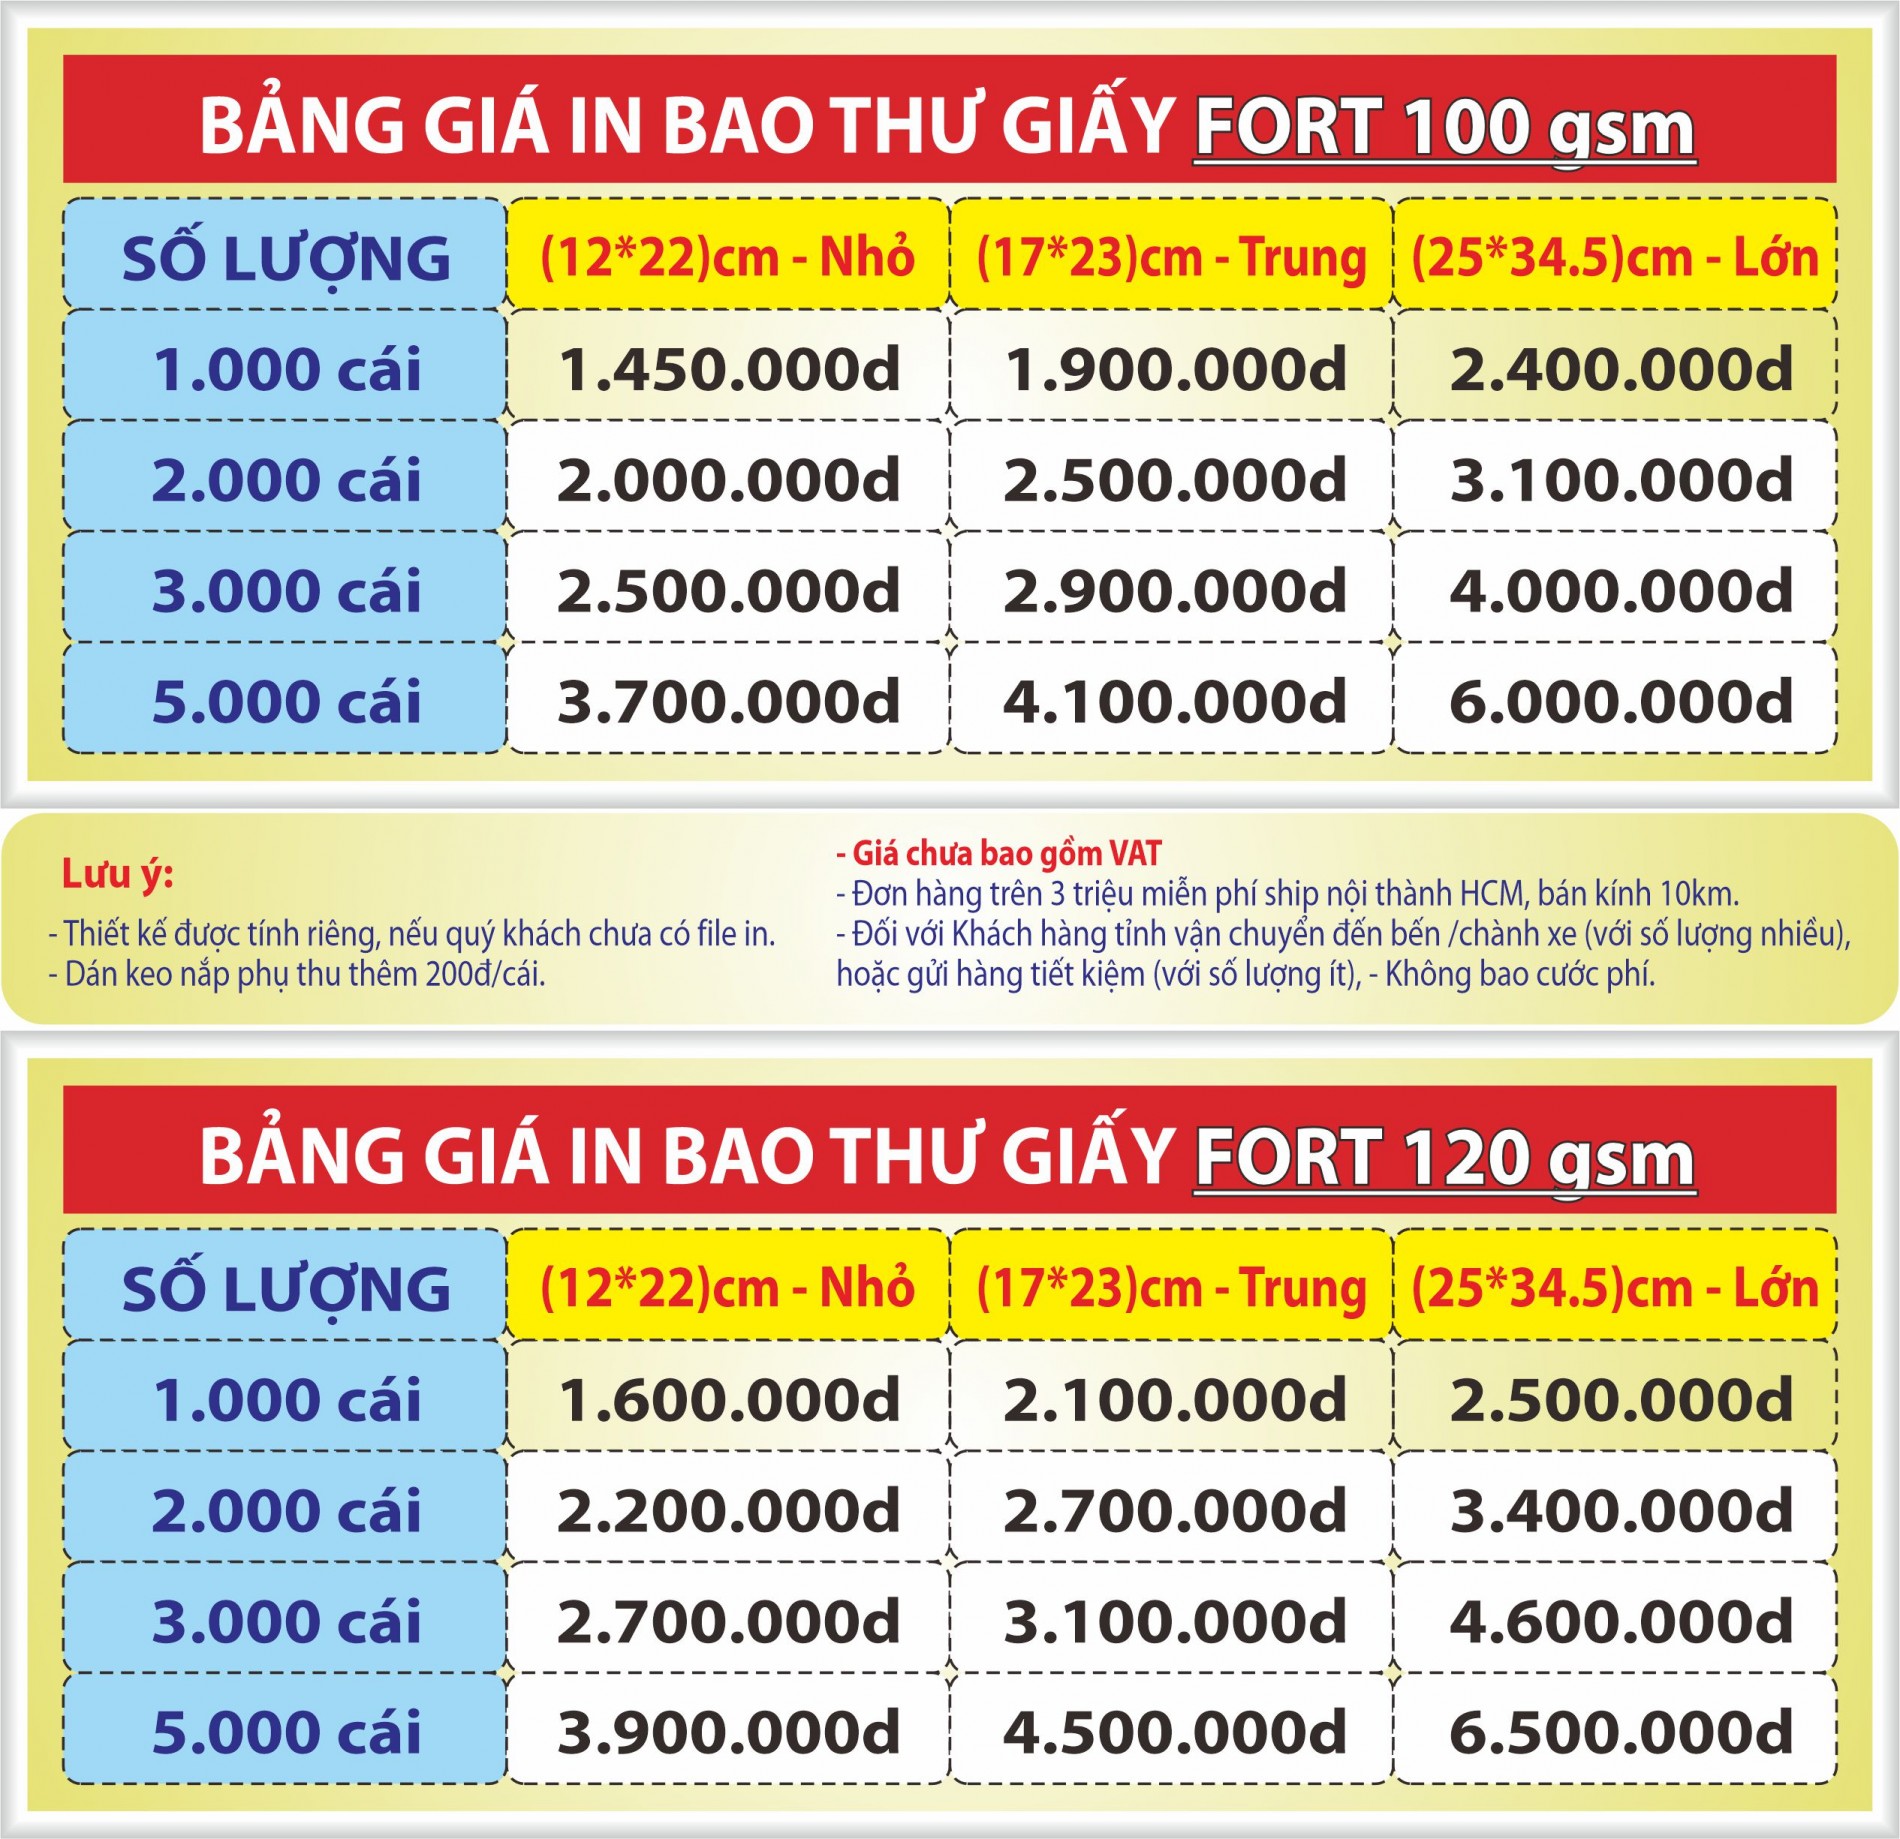 Báo giá in bao thư, in phong bì giá rẻ nhất tại khu vực Gò Vấp, TP. Hồ Chí Minh & các tỉnh lân cận